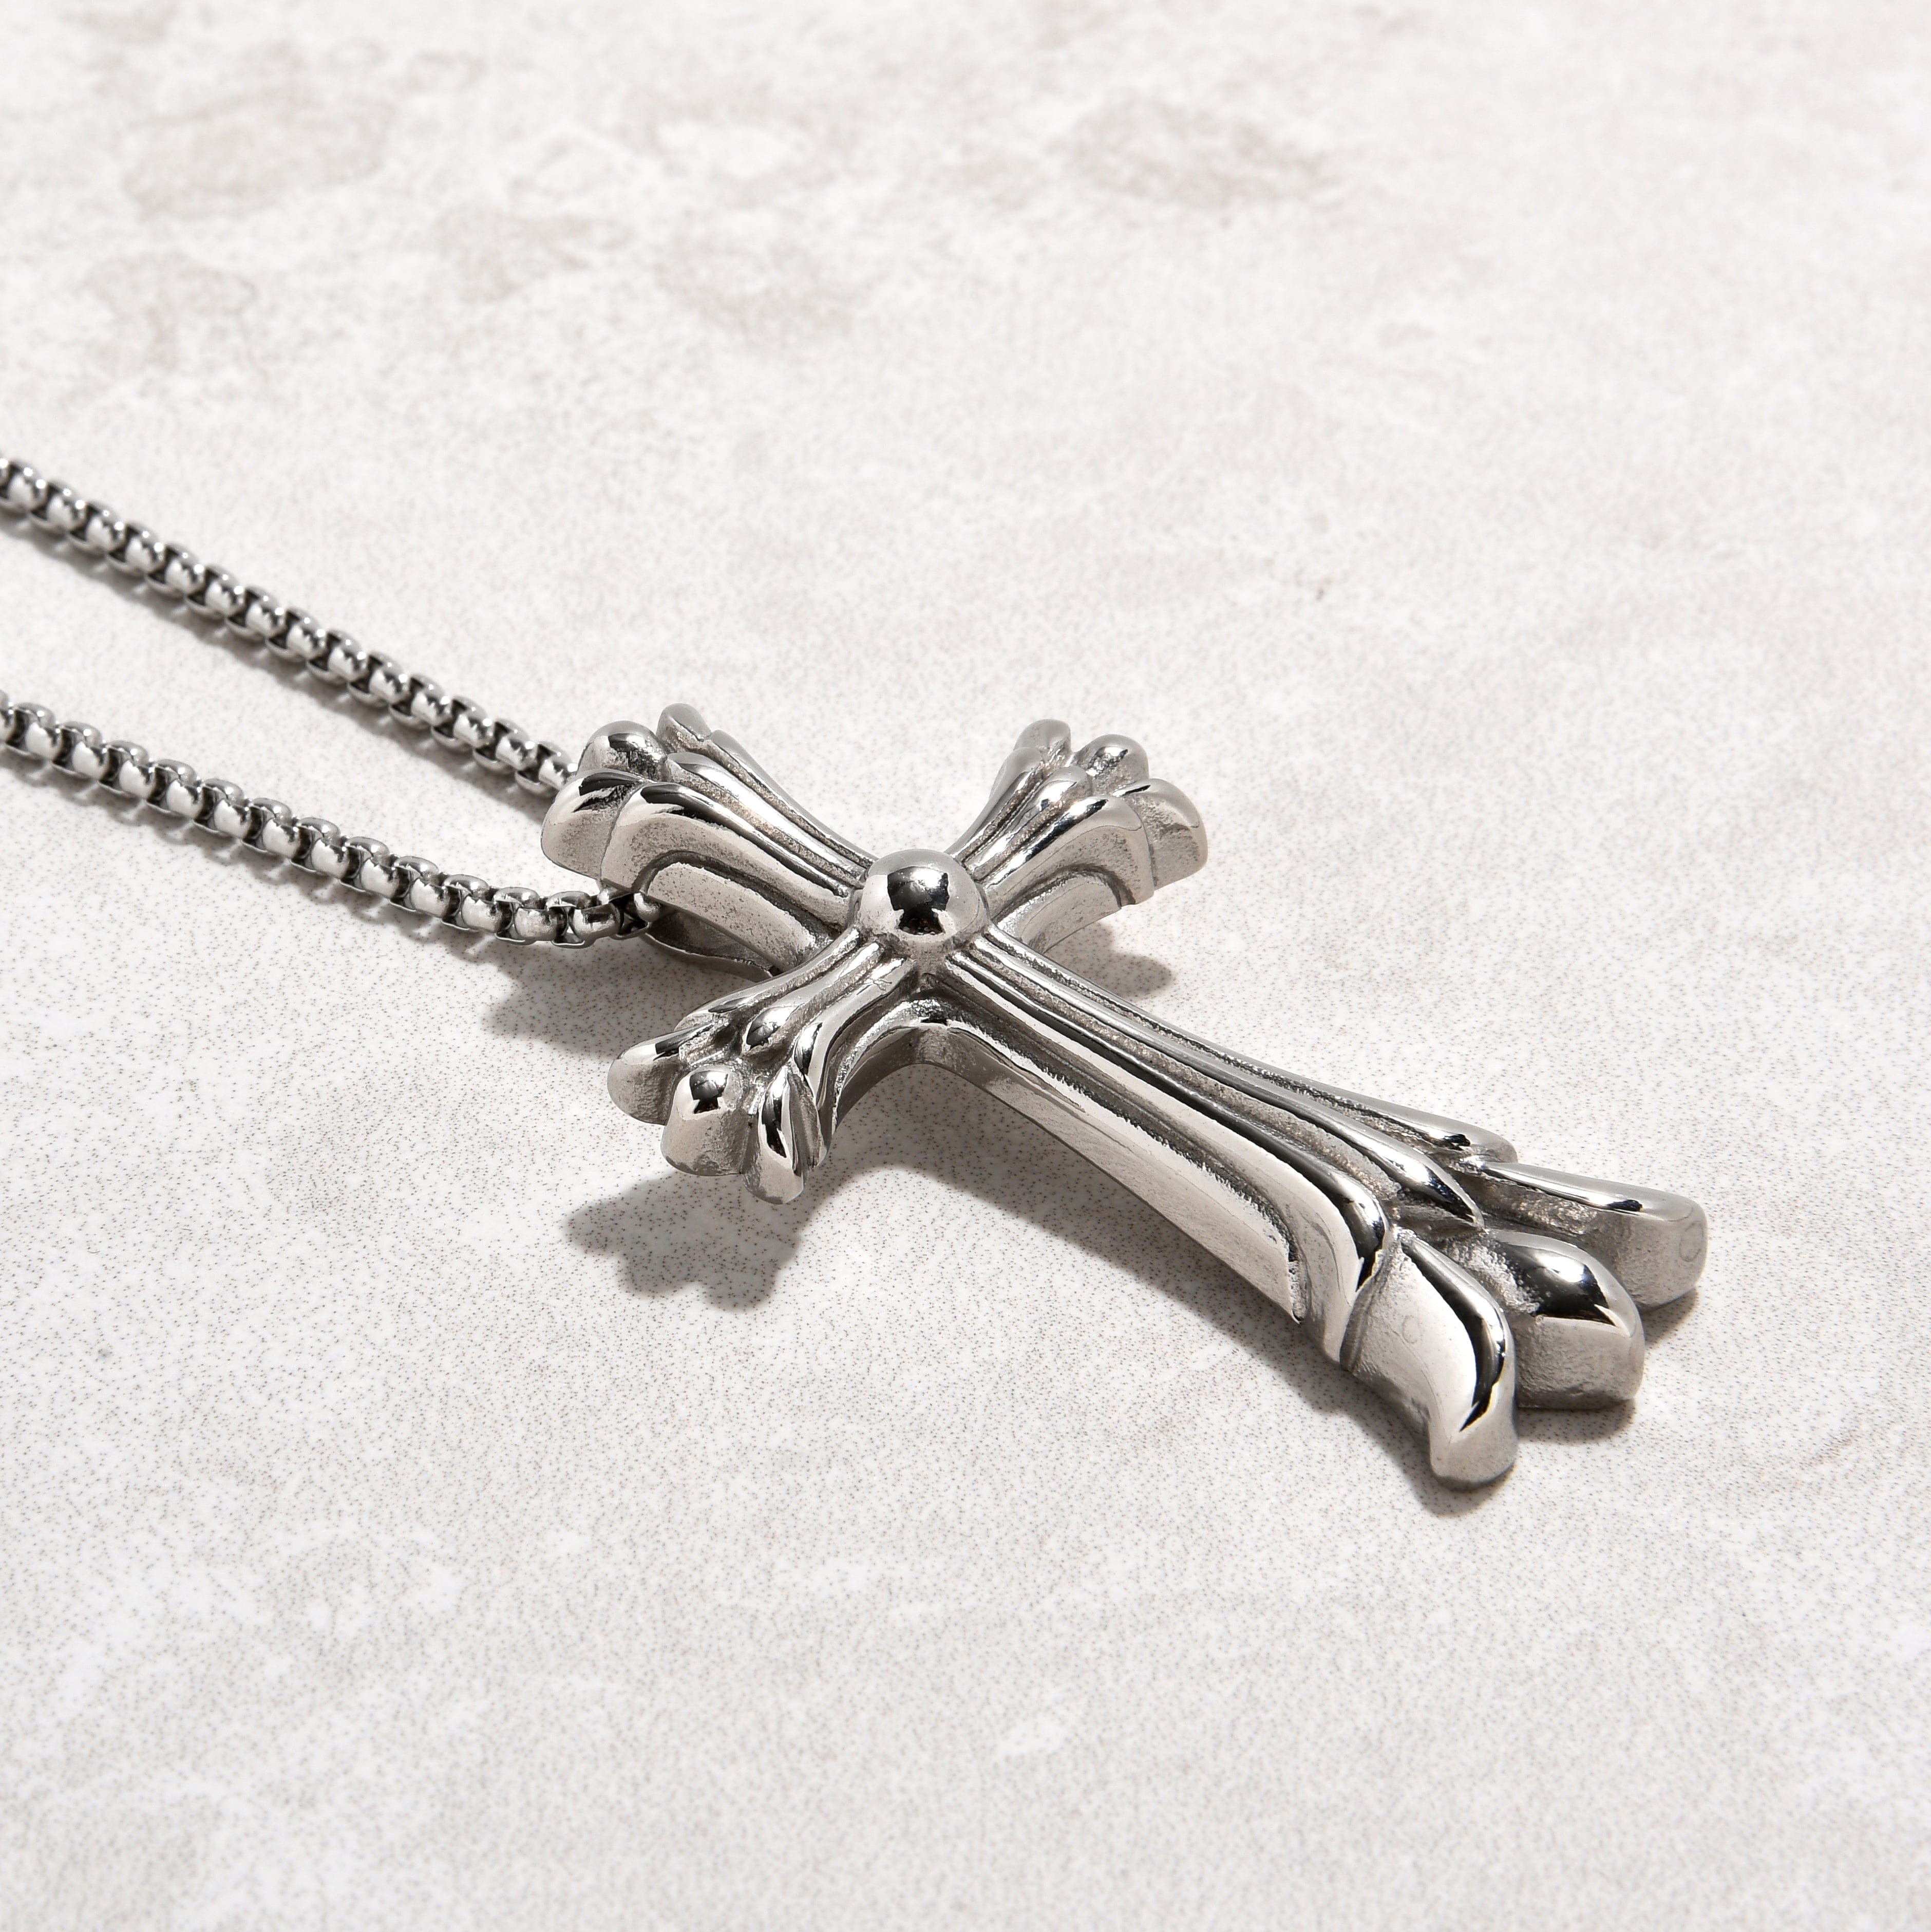 Kalifano Steel Hearts Jewelry Silver Cross Steel Hearts Necklace SHN530-S